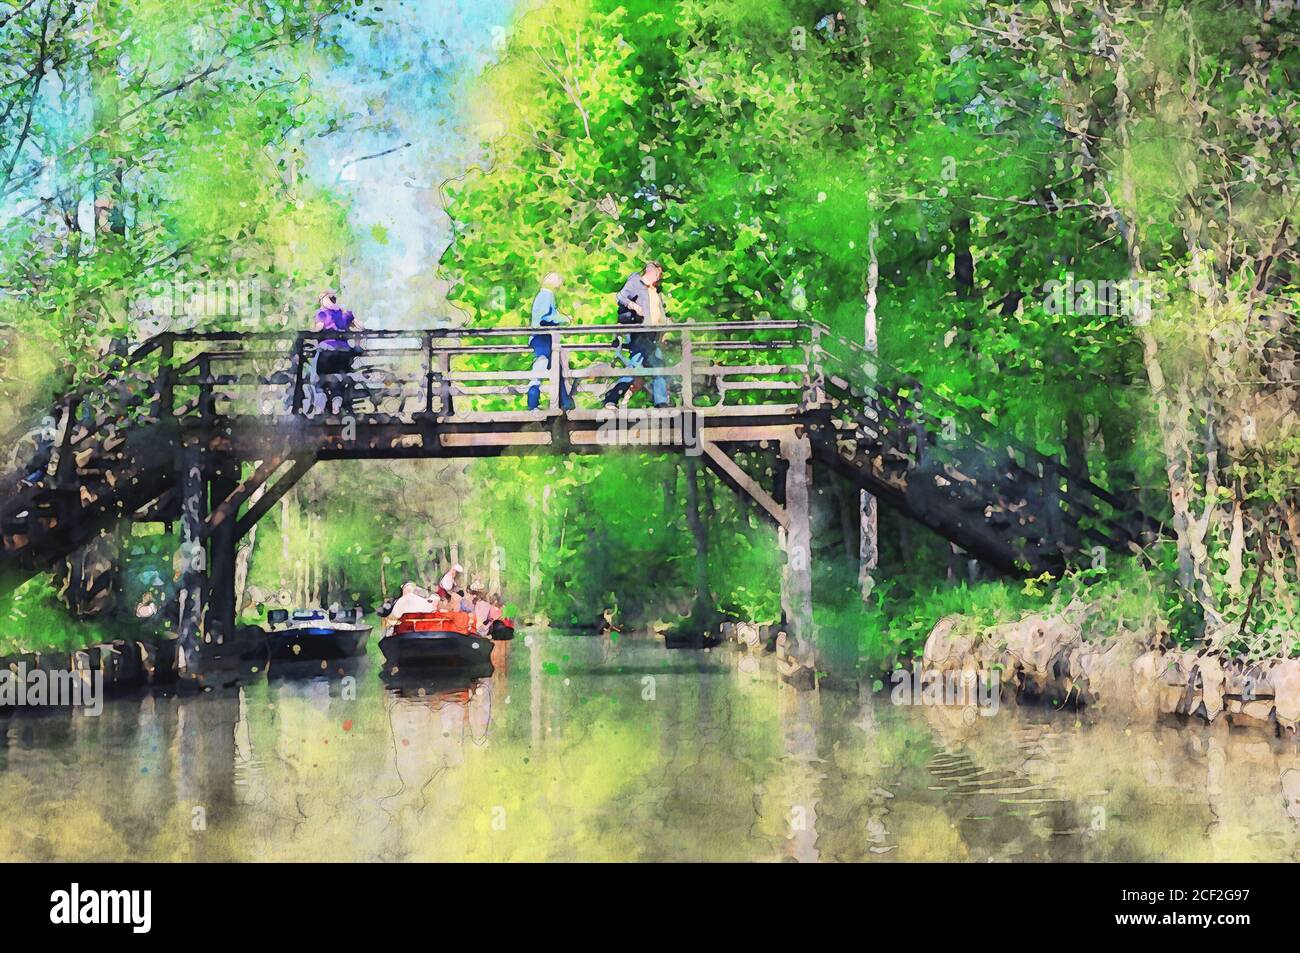 Illustration numérique de la forêt de Spreewald dans le Brandebourg en Allemagne. Bateau touristique dans le canal et les personnes marchant sur un pont. Banque D'Images